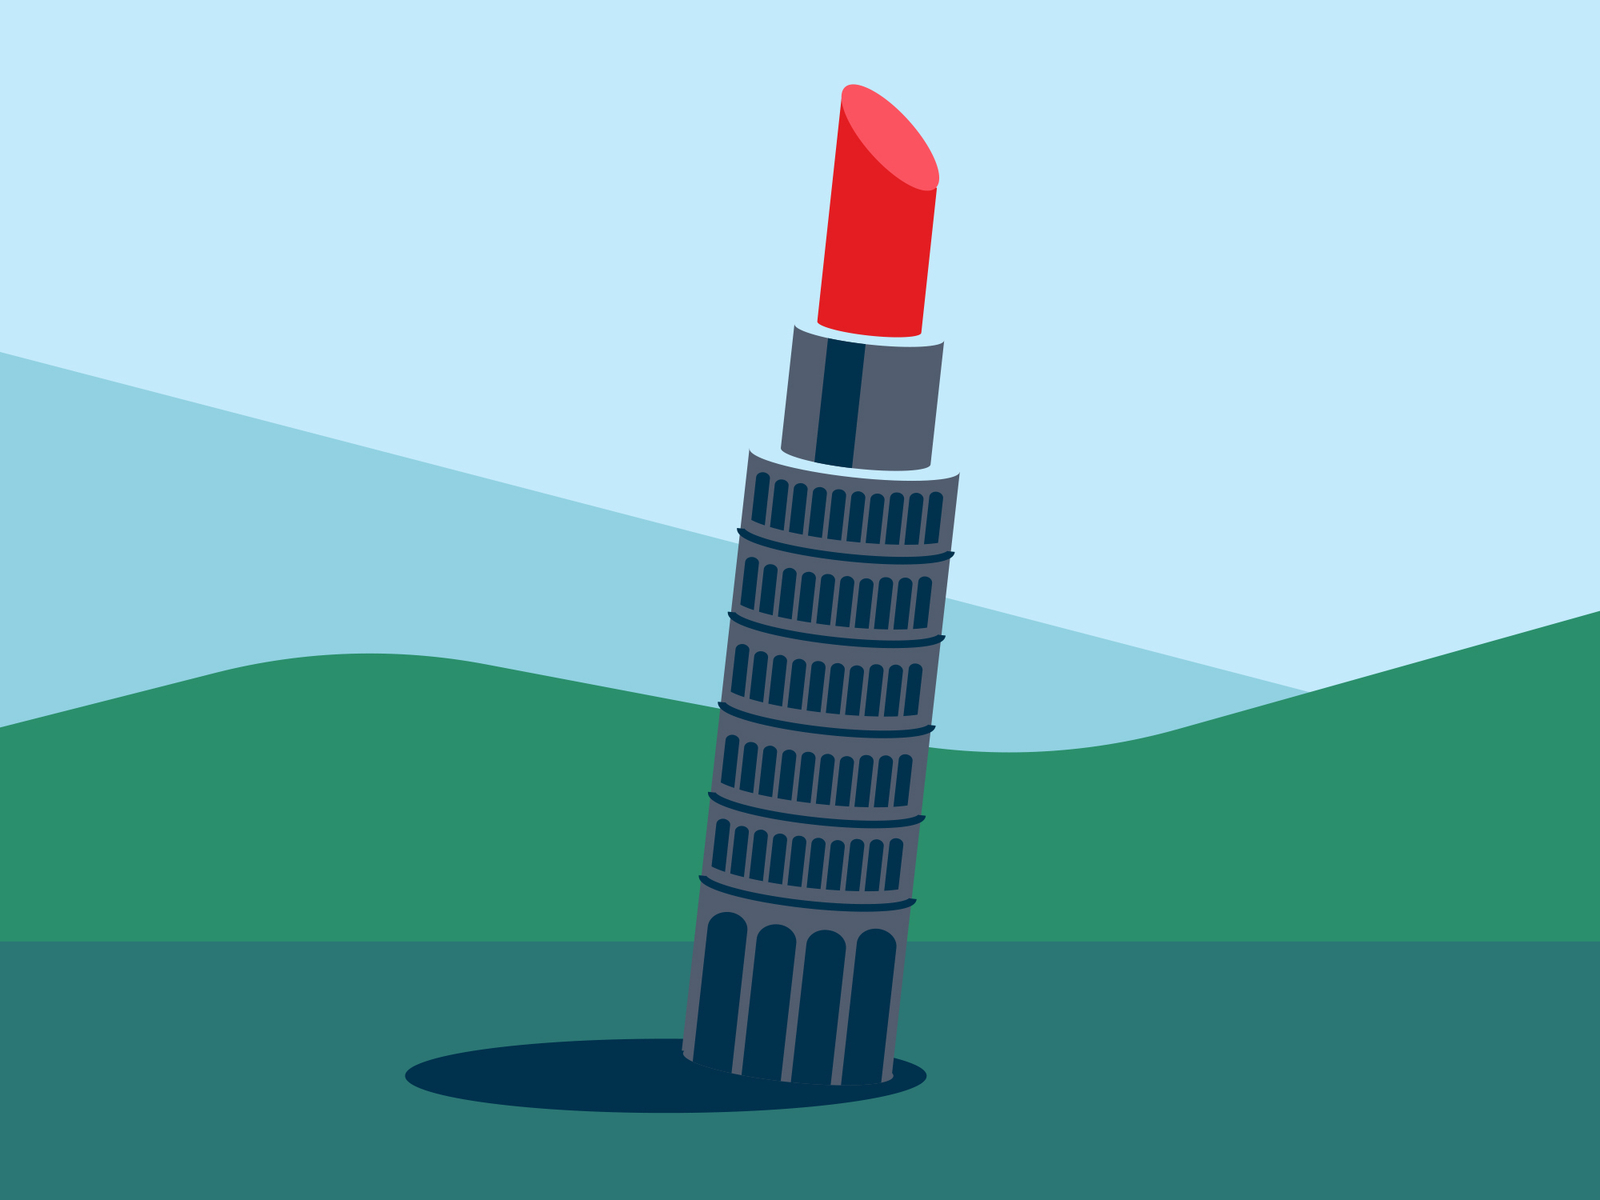 torre di Pisa italy fun minimalist illustration tour de pise pisa pisa tower